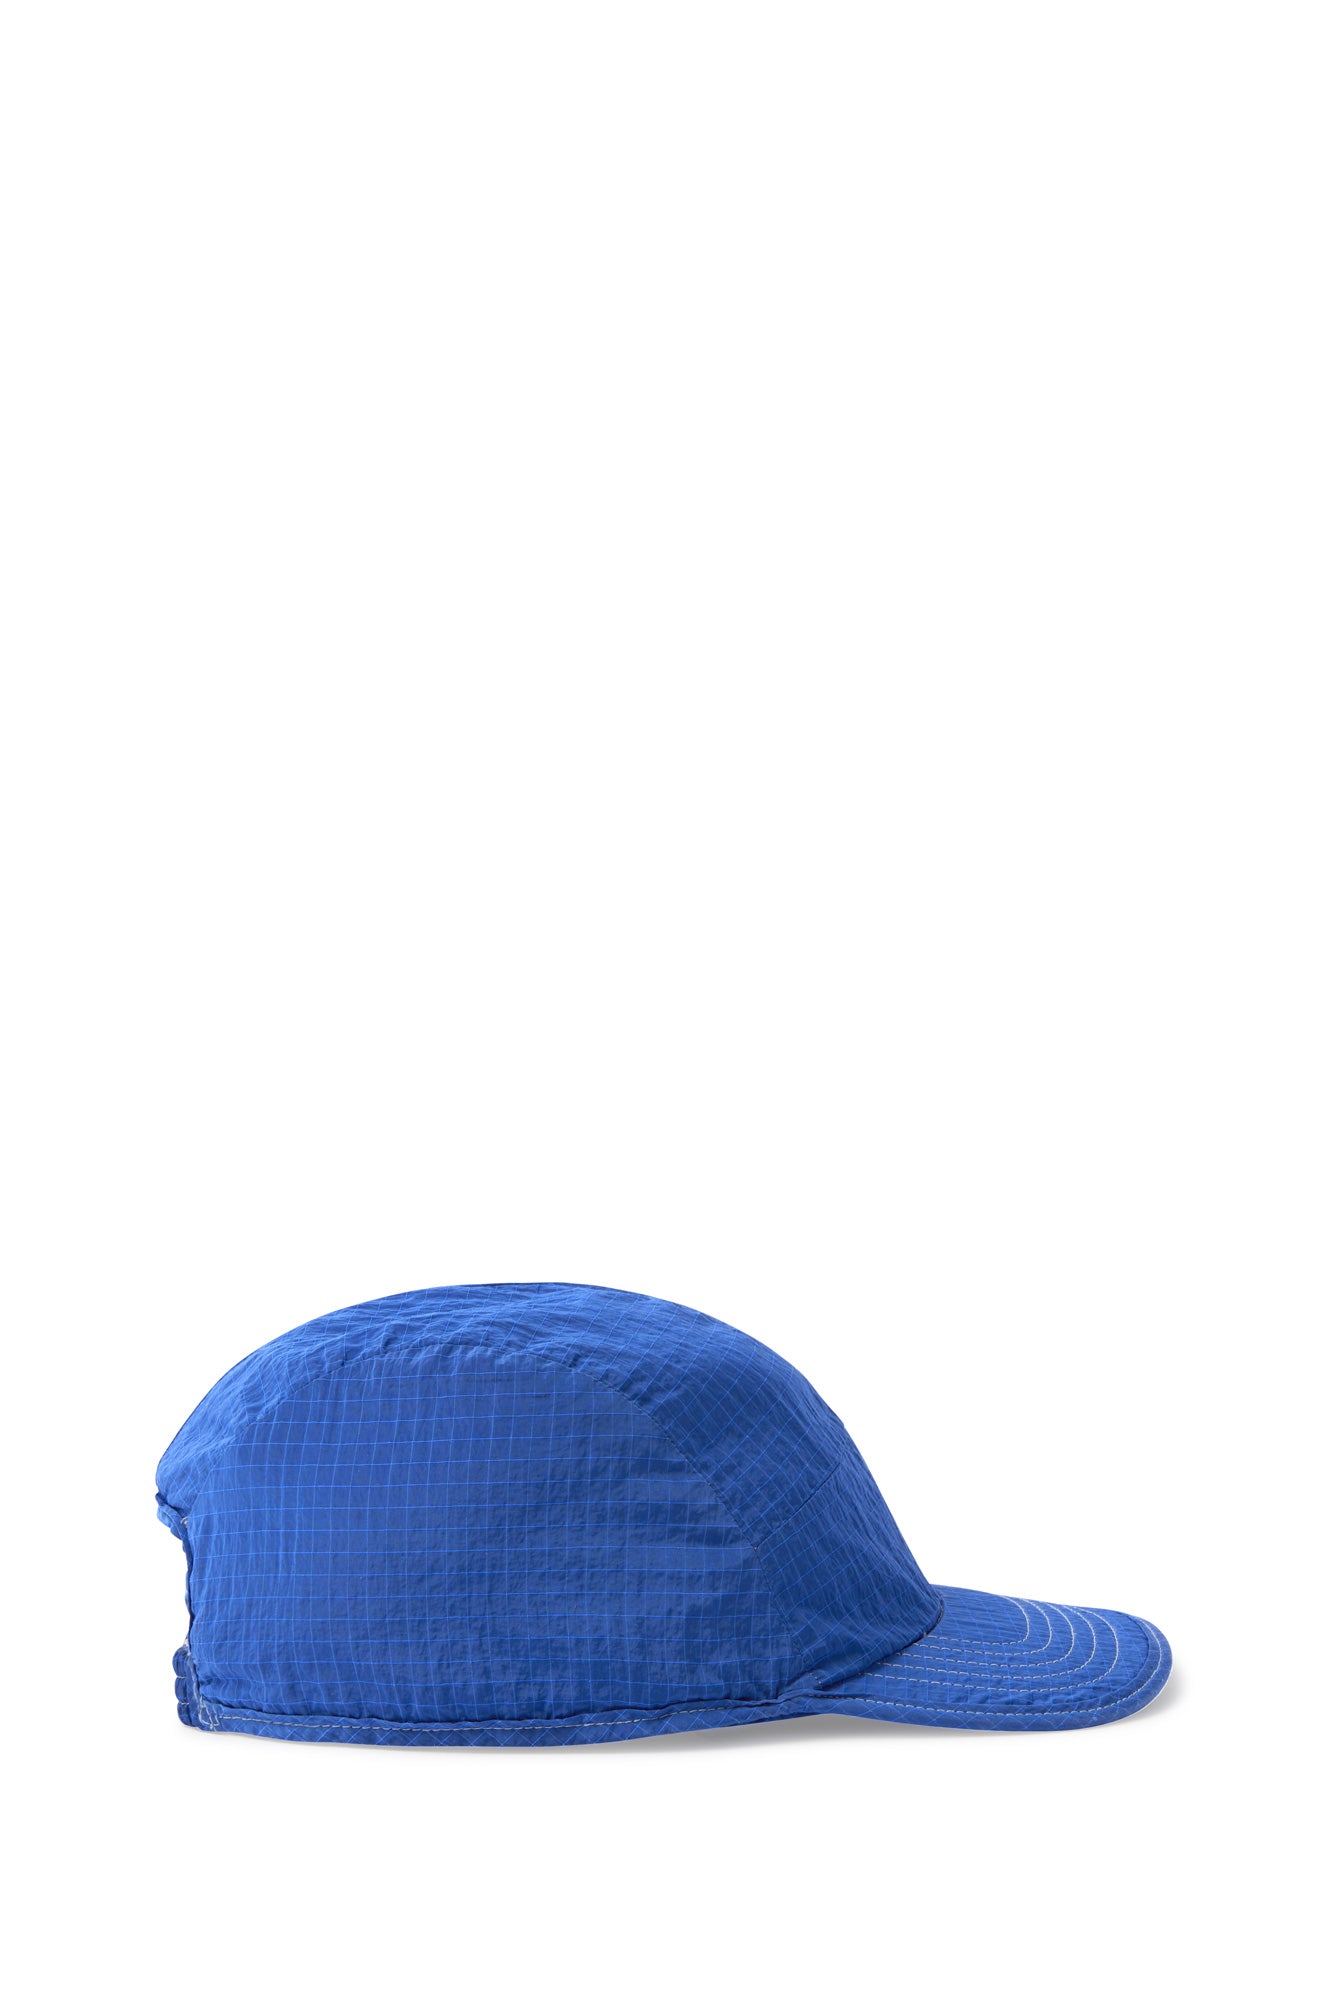 BASEBALL CAP / ocean blue